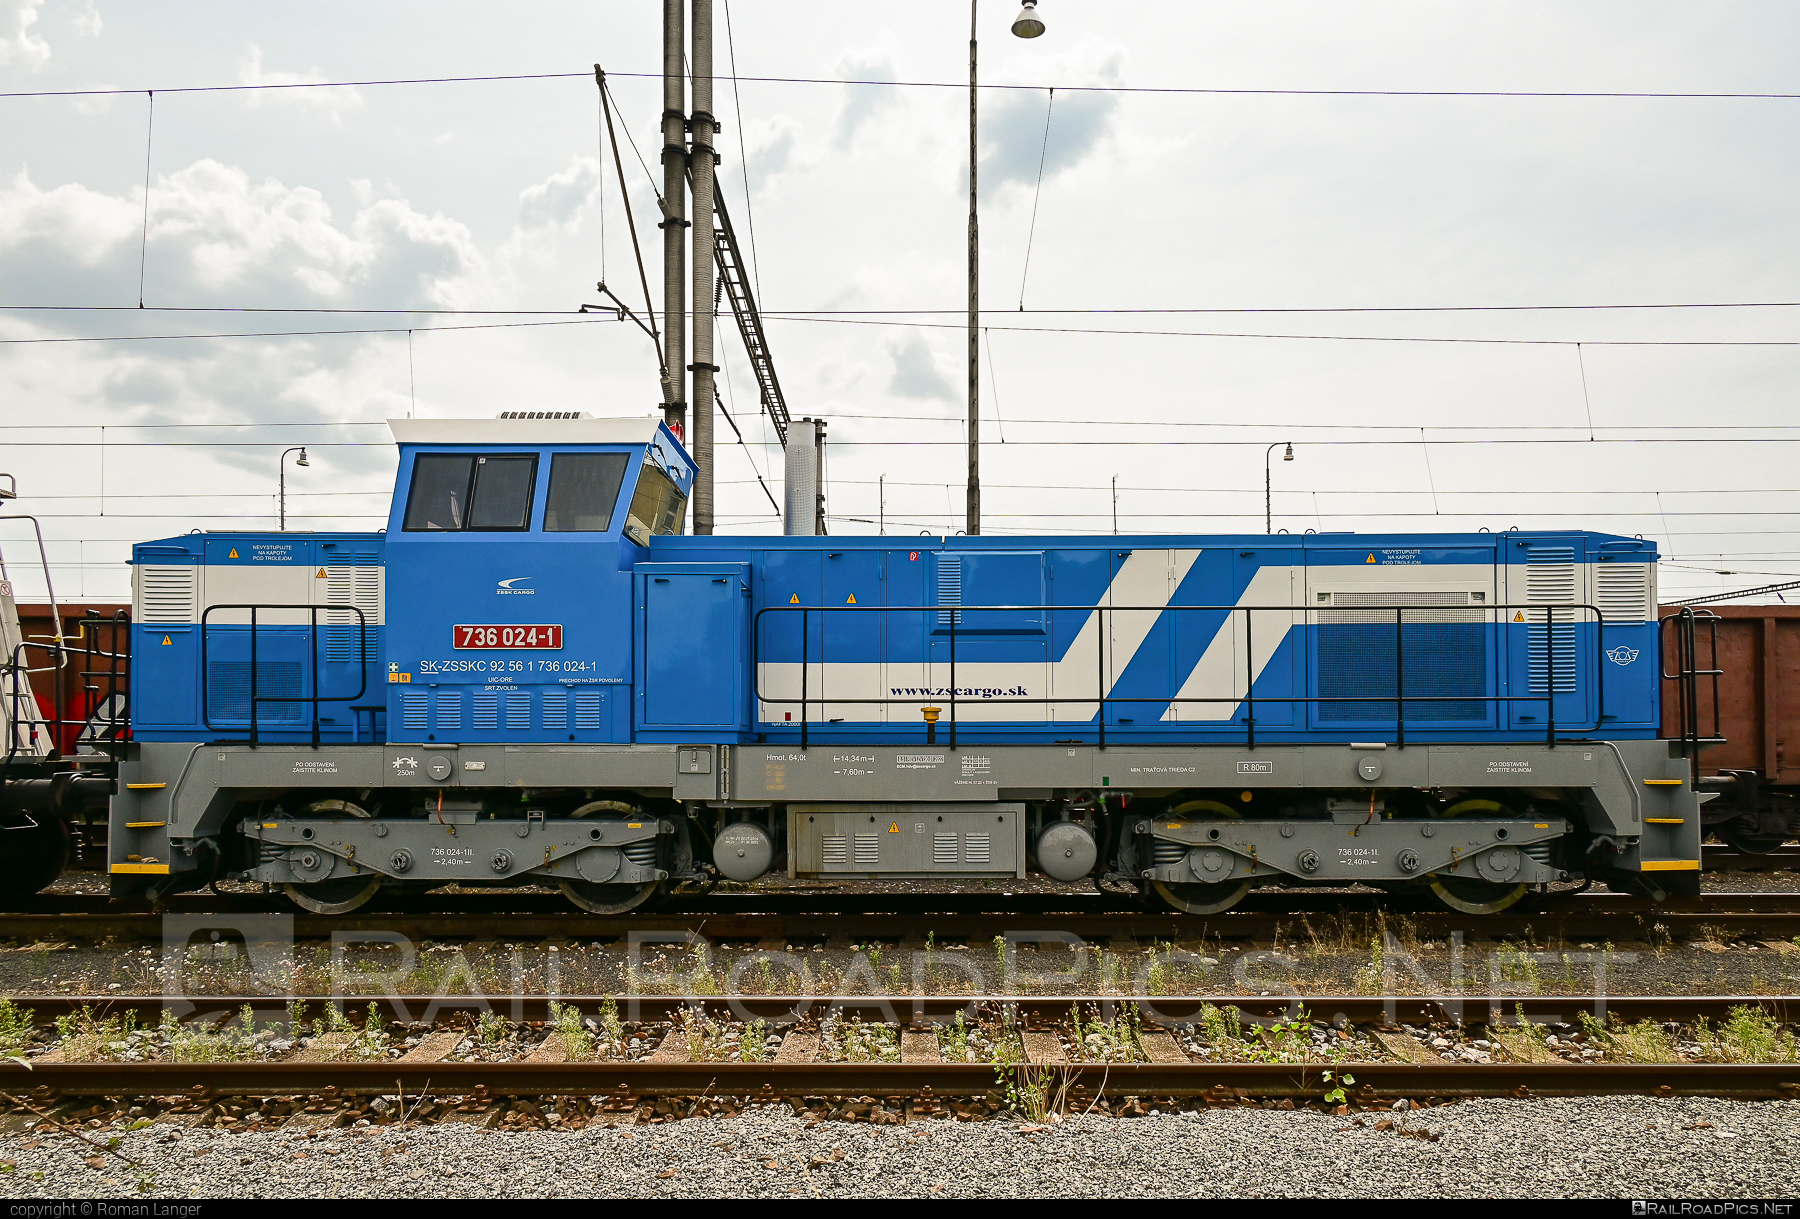 ŽOS Zvolen Class 736 - 736 024-1 operated by Železničná Spoločnost' Cargo Slovakia a.s. #ZeleznicnaSpolocnostCargoSlovakia #locomotive736 #zoszvolen #zoszvolen736 #zsskcargo